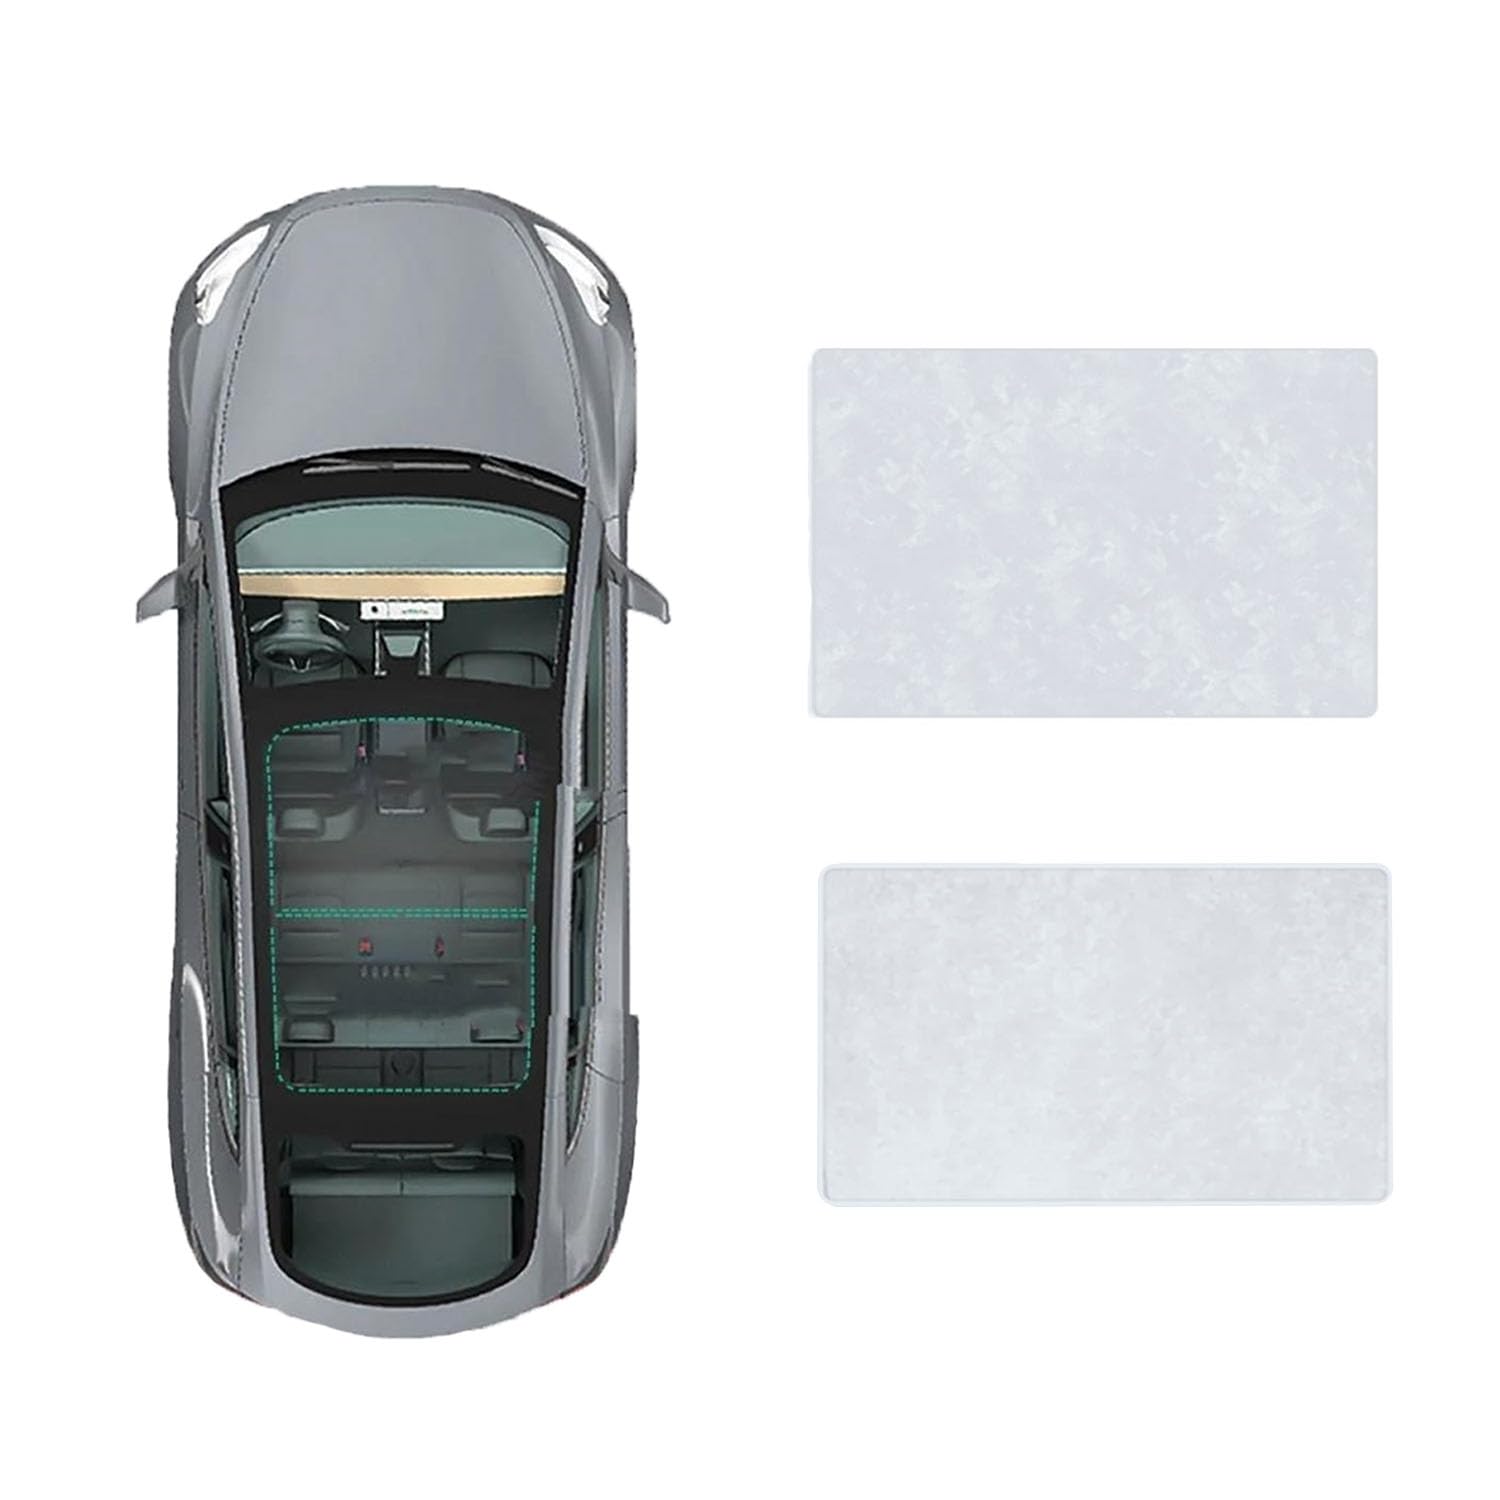 Auto-Schiebedach-Beschattung Für Ford Explorer 2011-2018,Auto Schiebedach Sonnenschutz Dachfenster Dach Wärme Isolierung Beschattung Innen,B-Gray white Suede von LiuROSE